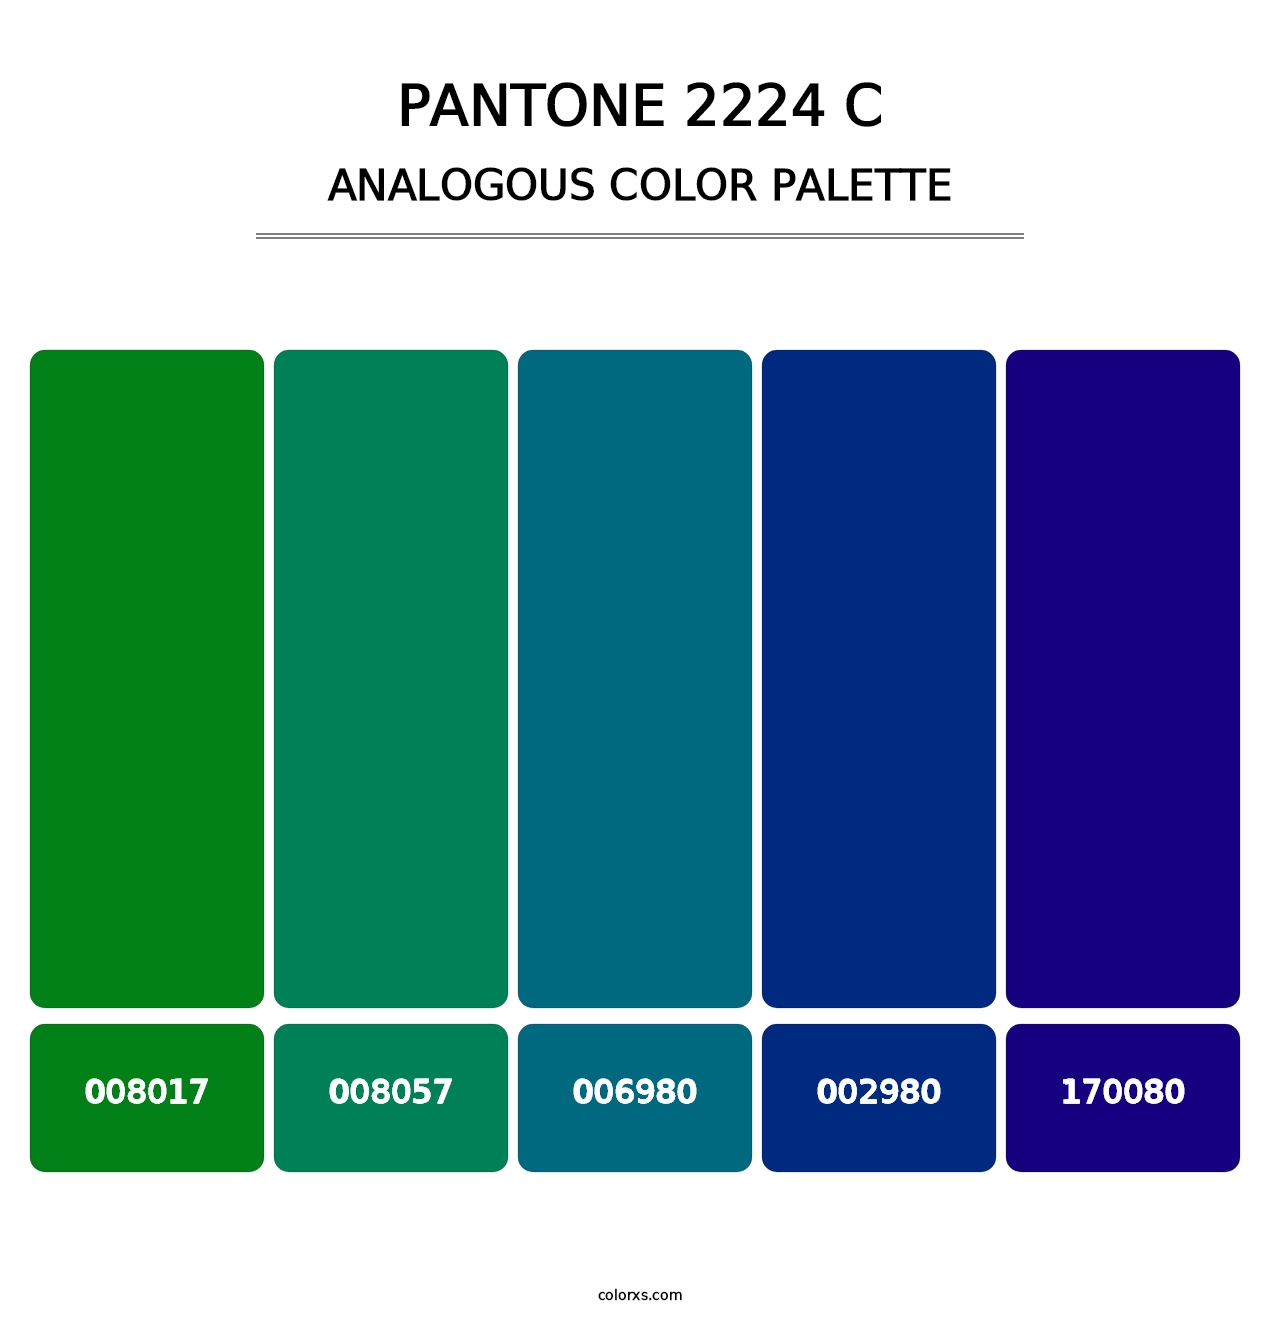 PANTONE 2224 C - Analogous Color Palette